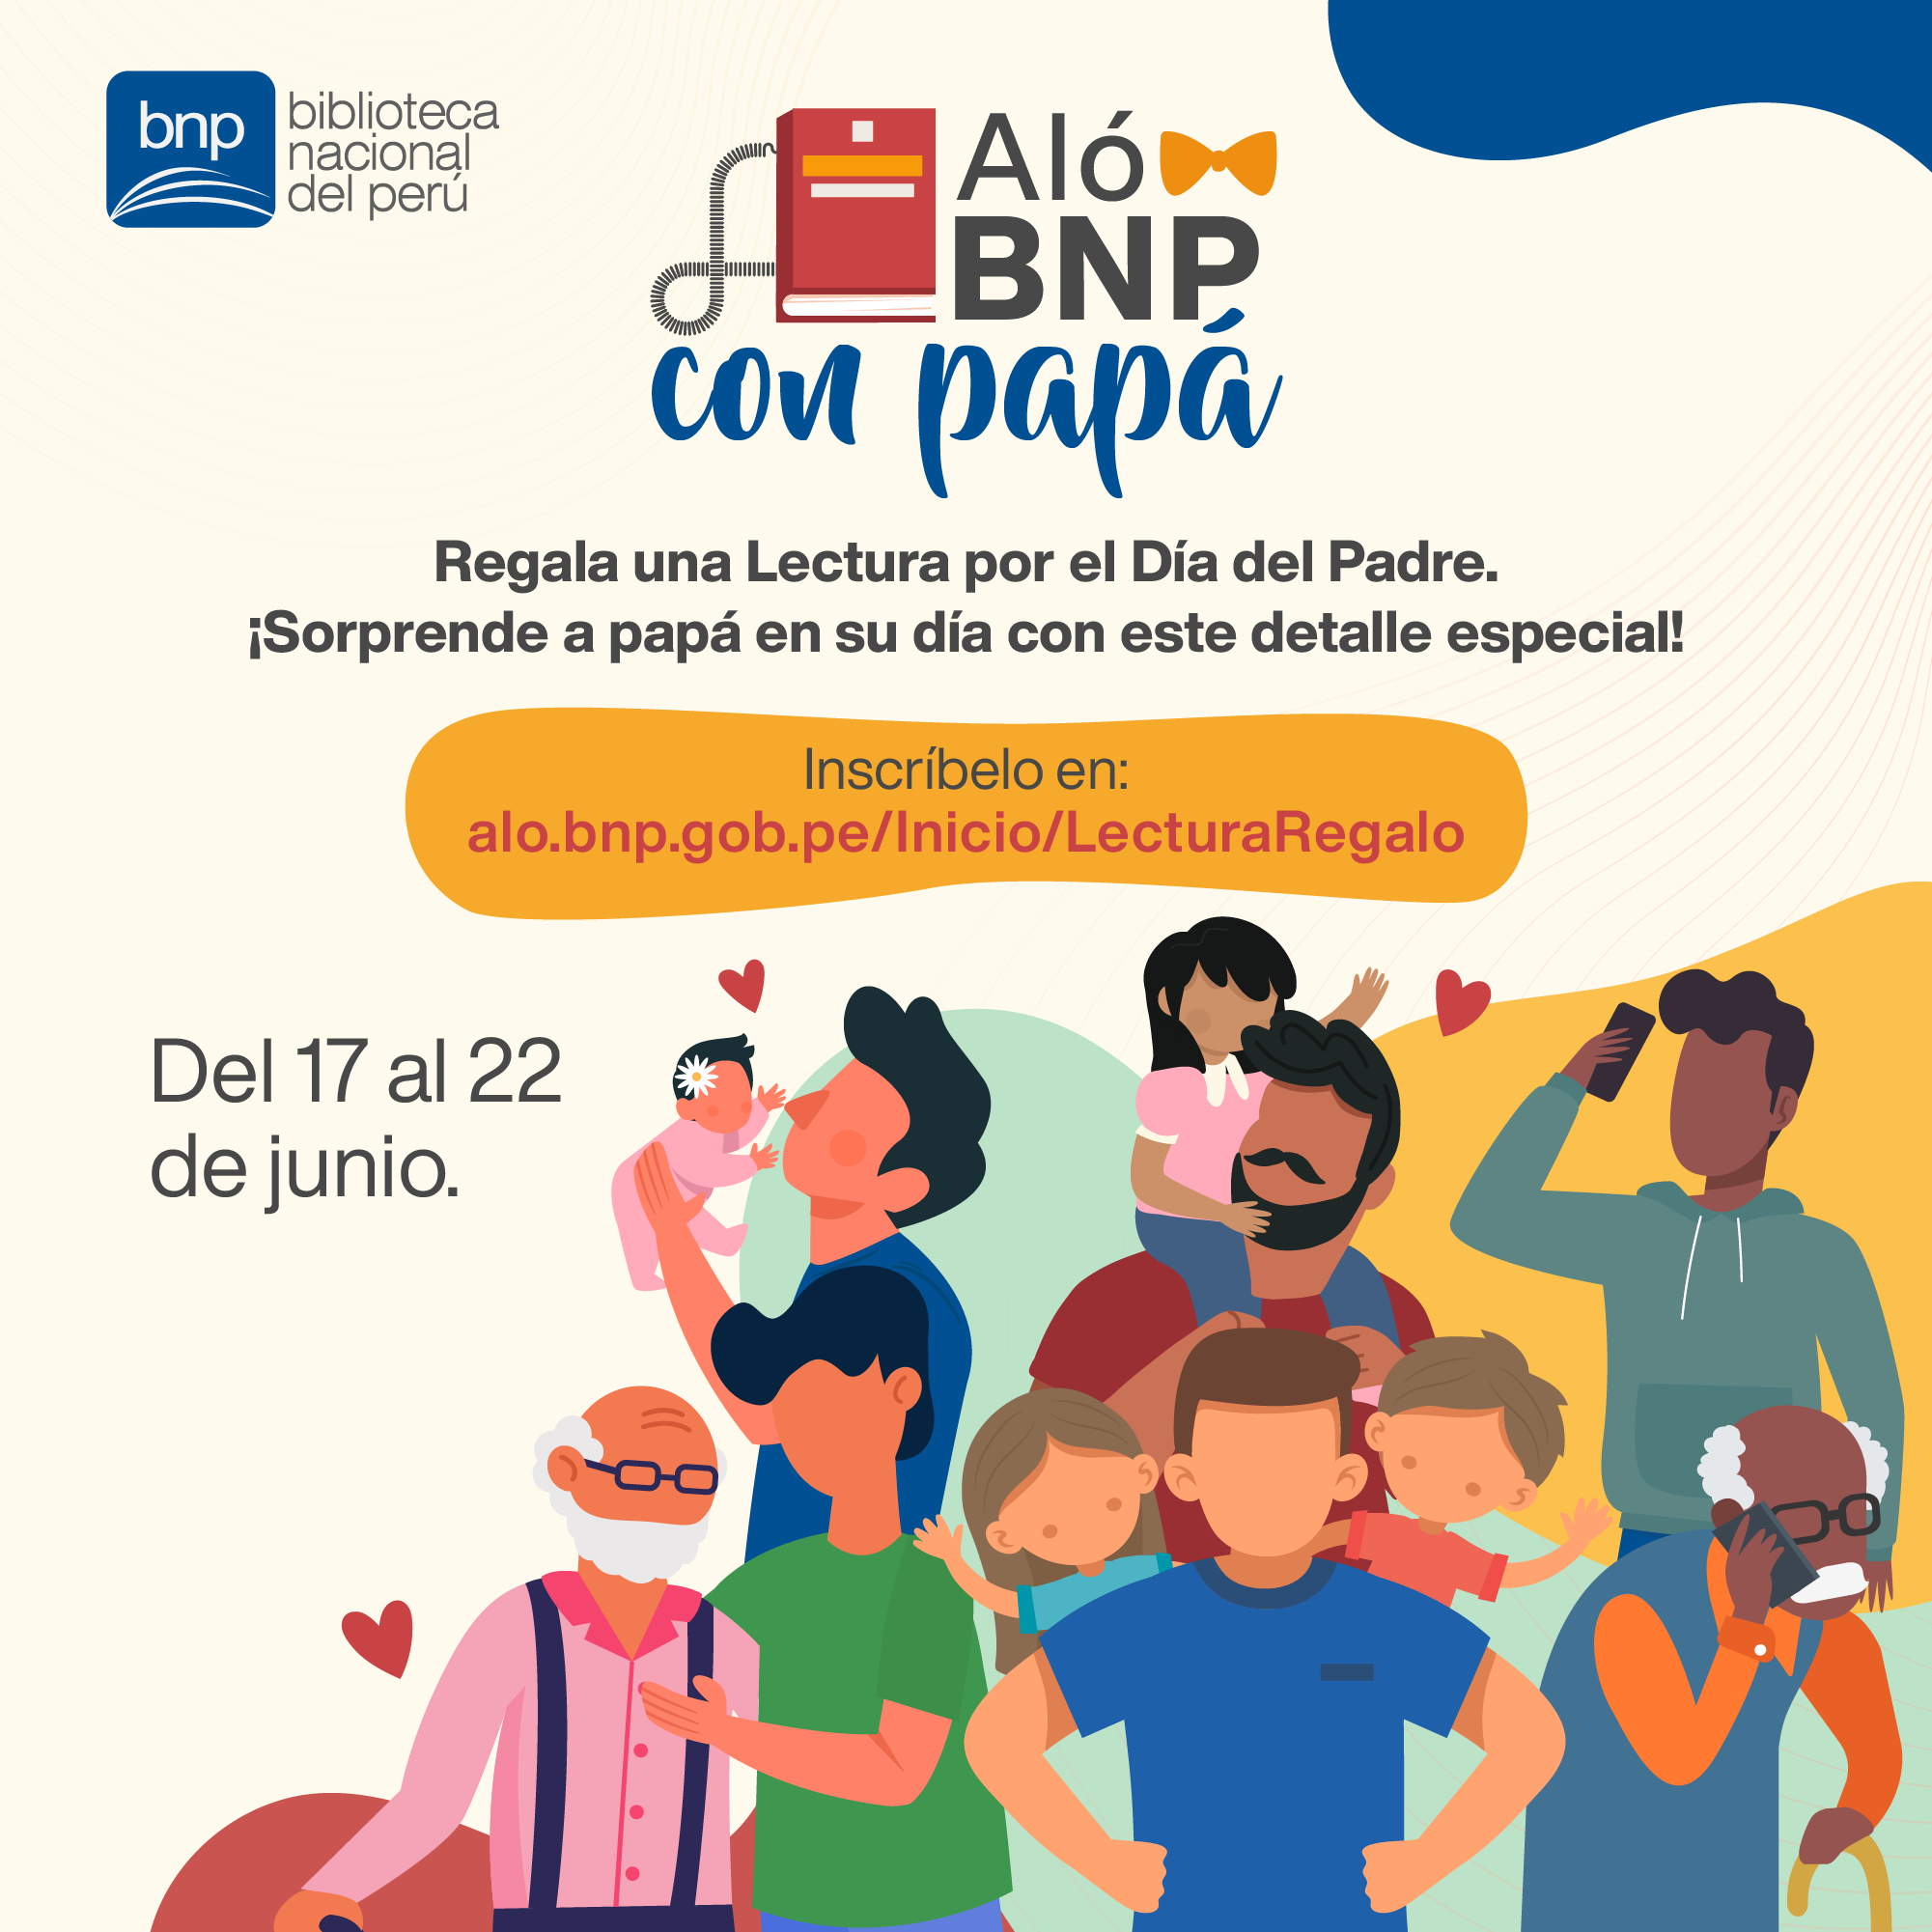 Regala una lectura en el Día del Padre a través de “Aló BNP” | Biblioteca  Nacional del Perú | BNP